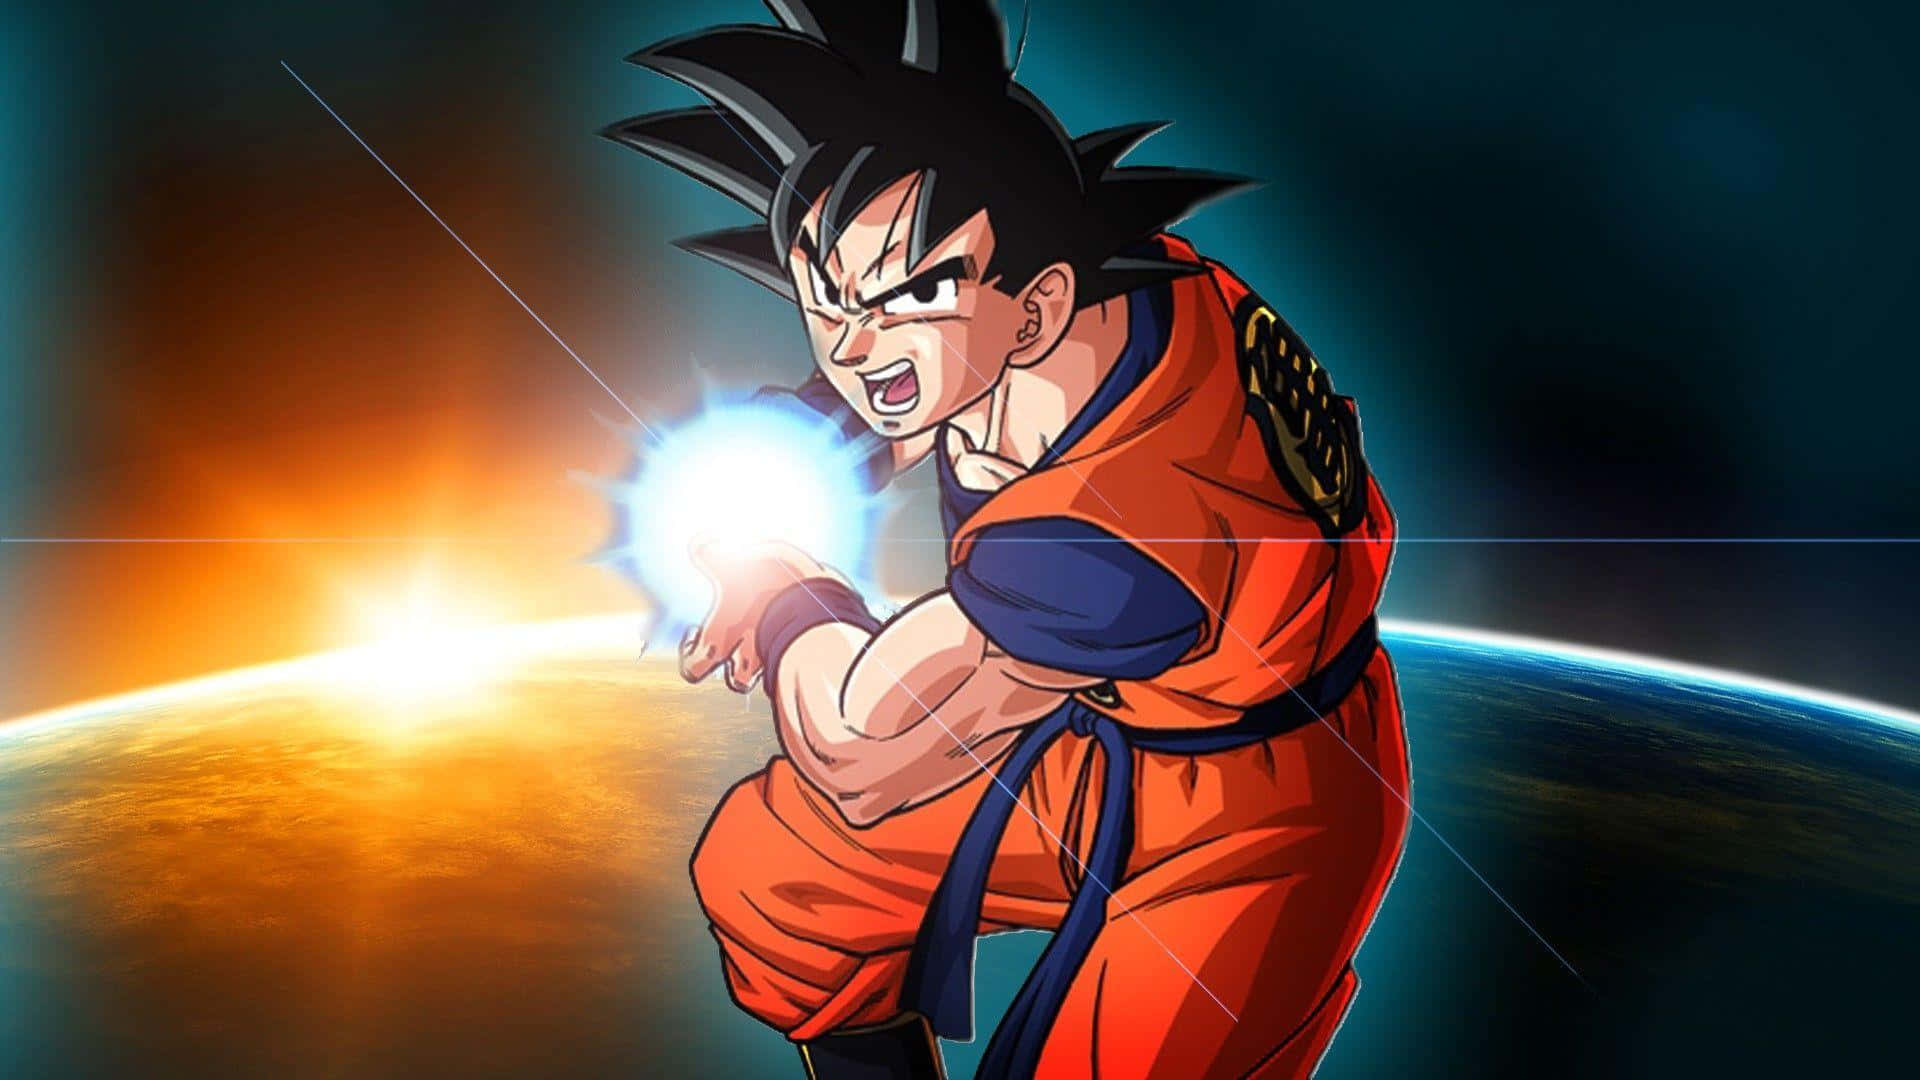 Is Kamehameha Goku's only blast attack? - Quora